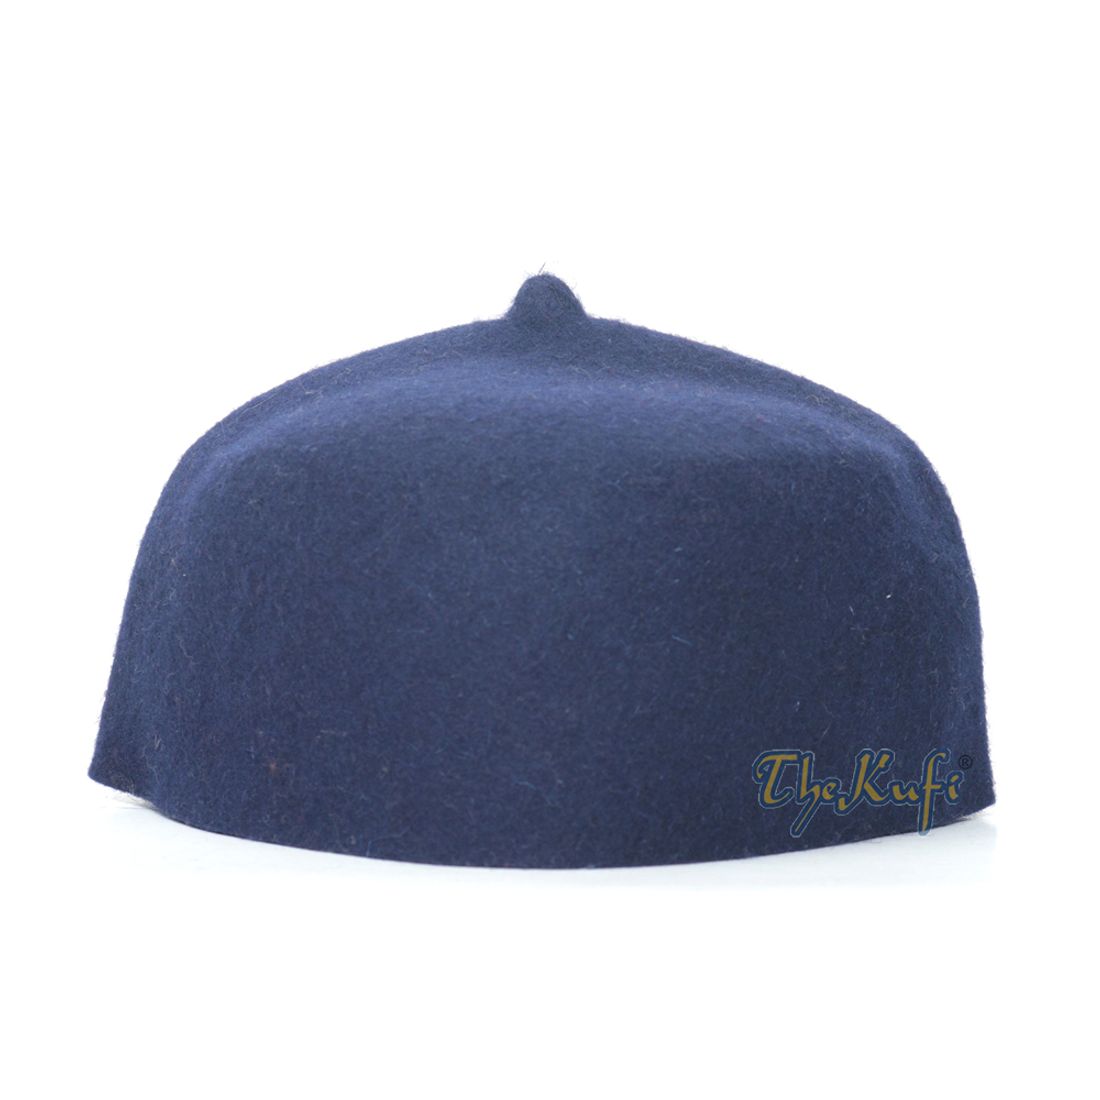 Topi Fez Wool Felt Biru Tua dengan Topi Solat Kufi